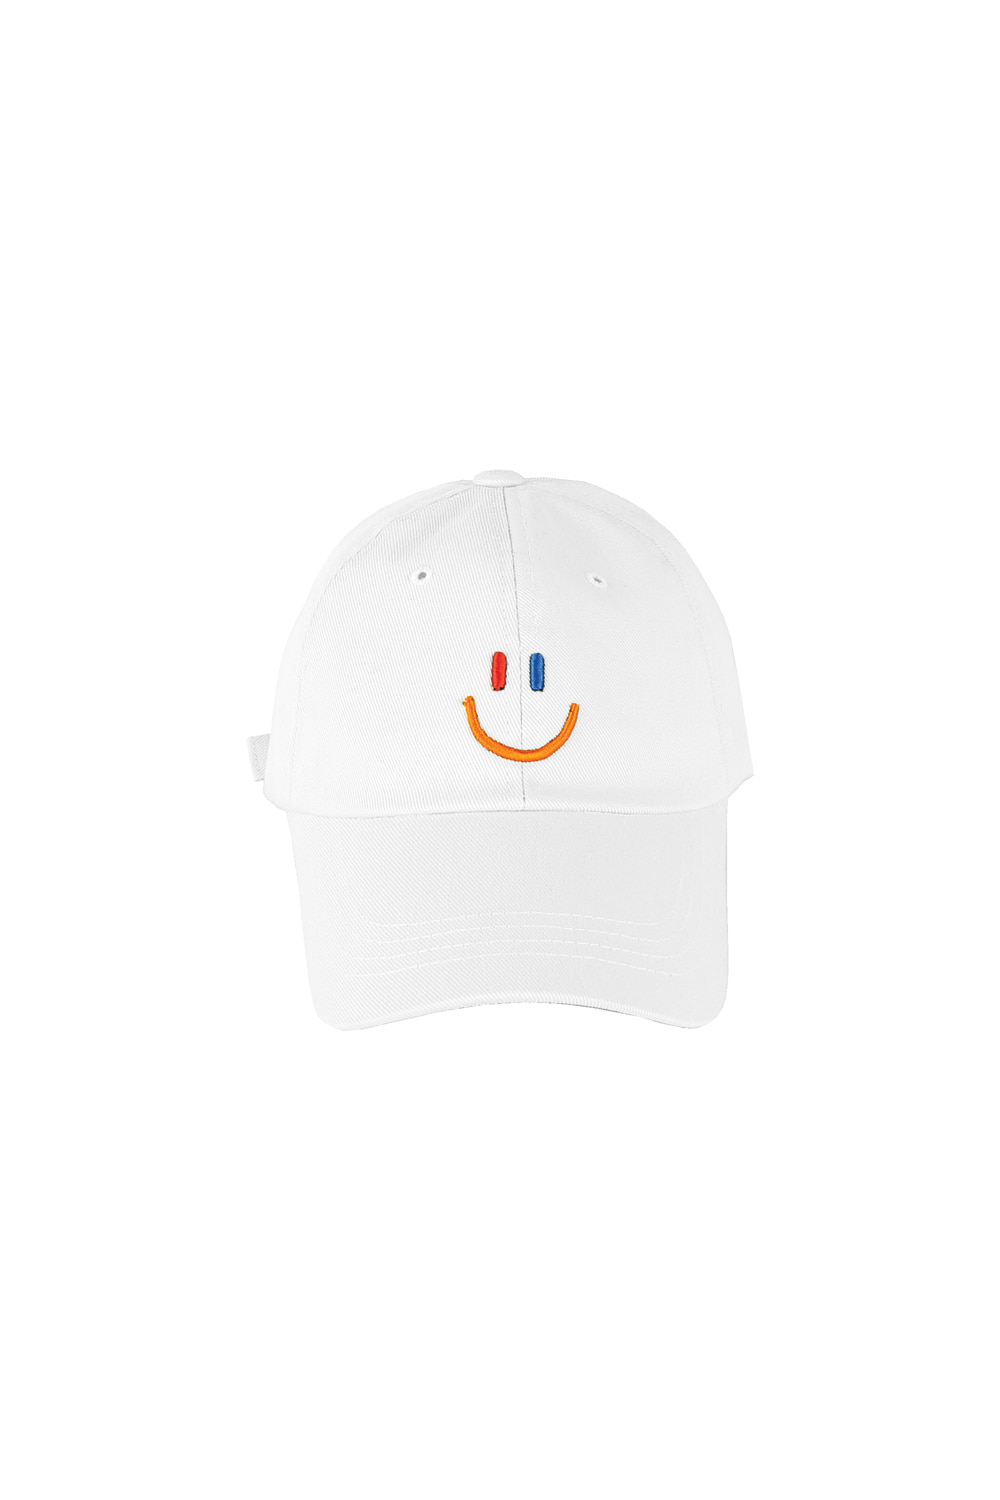 LaLa Smile Ball Cap [White]